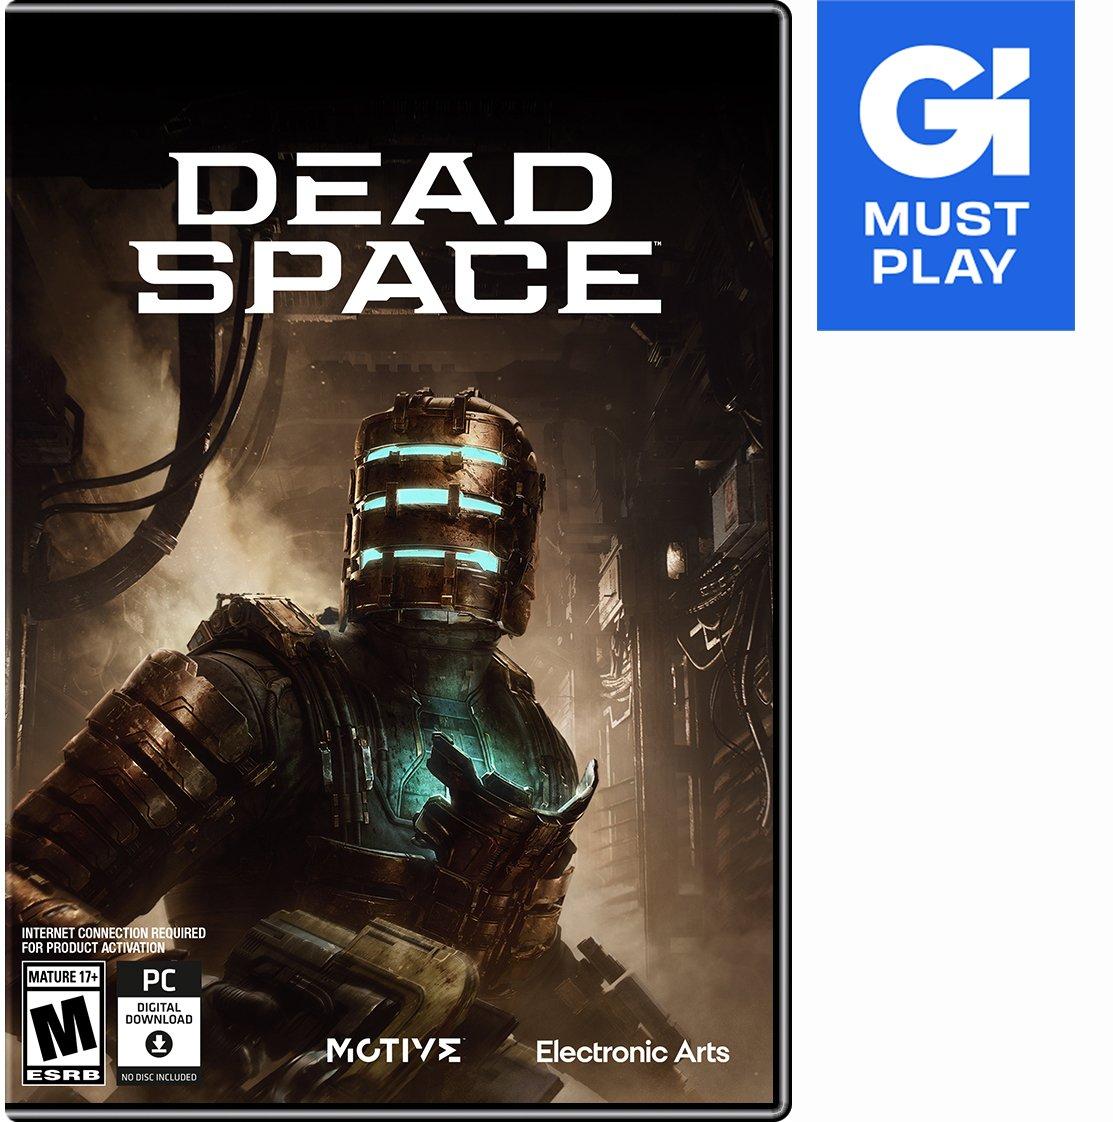 Dead Space - PC EA app | GameStop